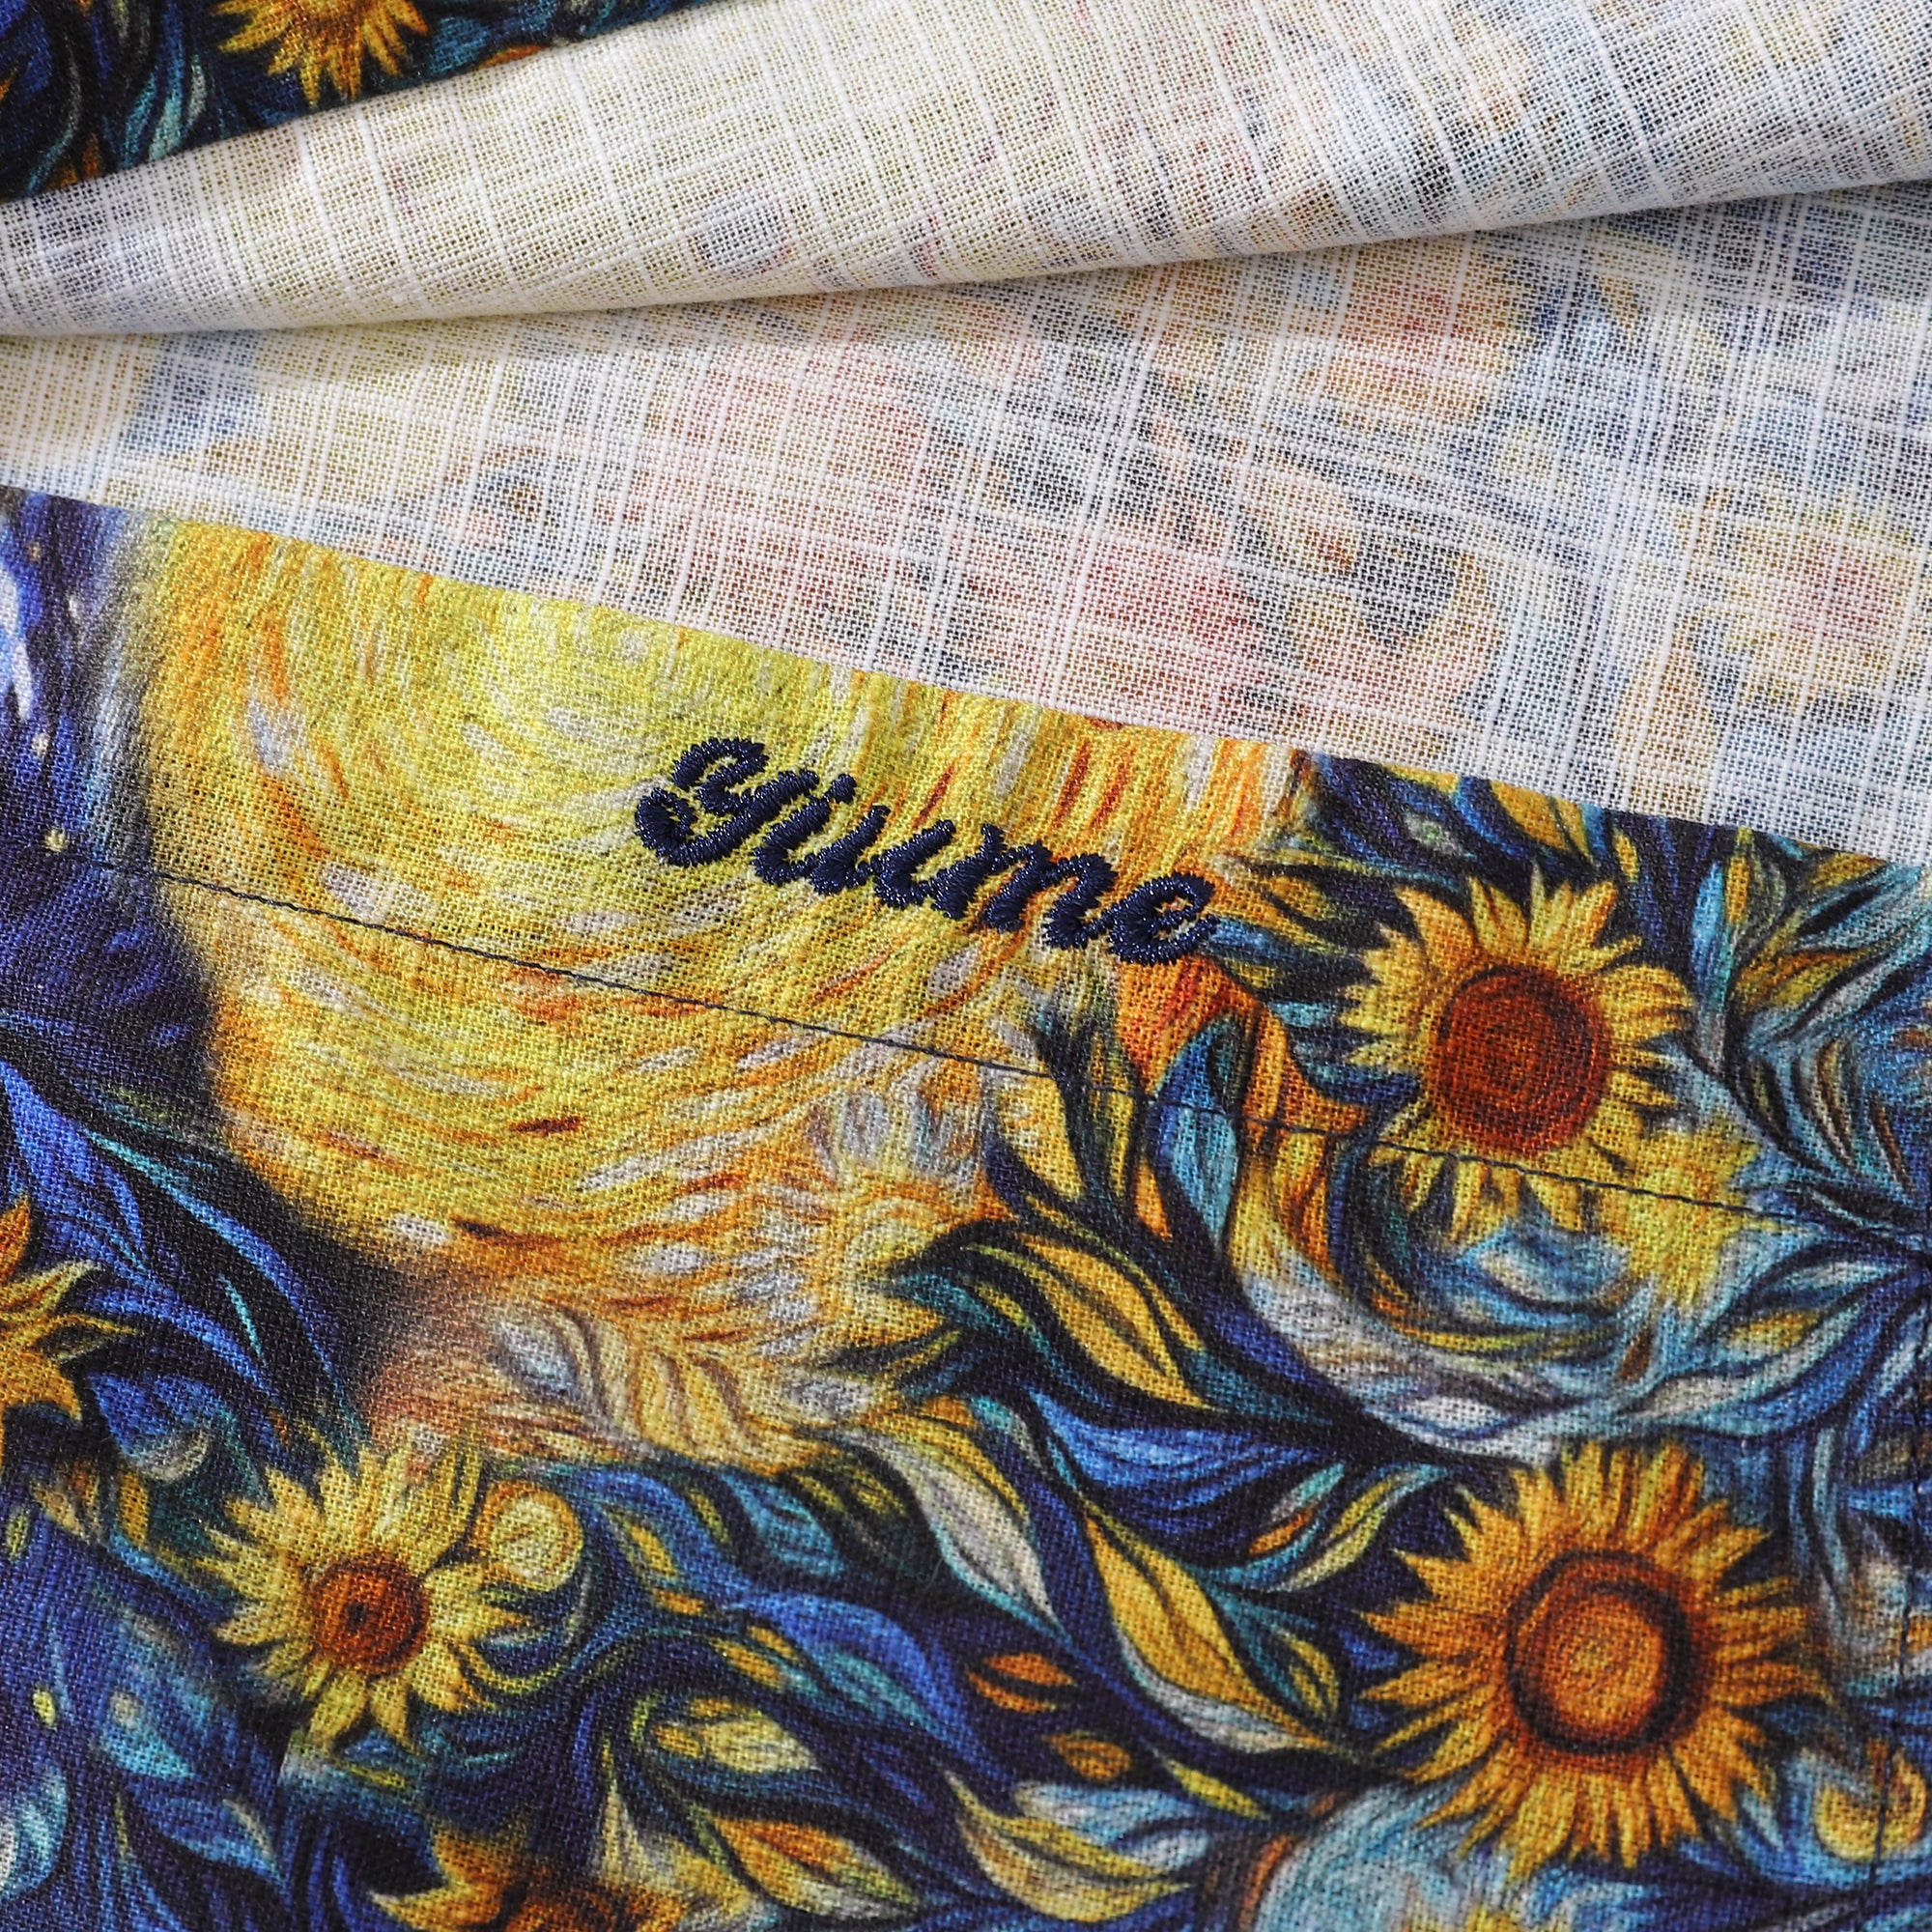 Long Sleeve Hawaiian Shirt For Men Van Gogh Sunflower Cotton Button-down Aloha Shirt